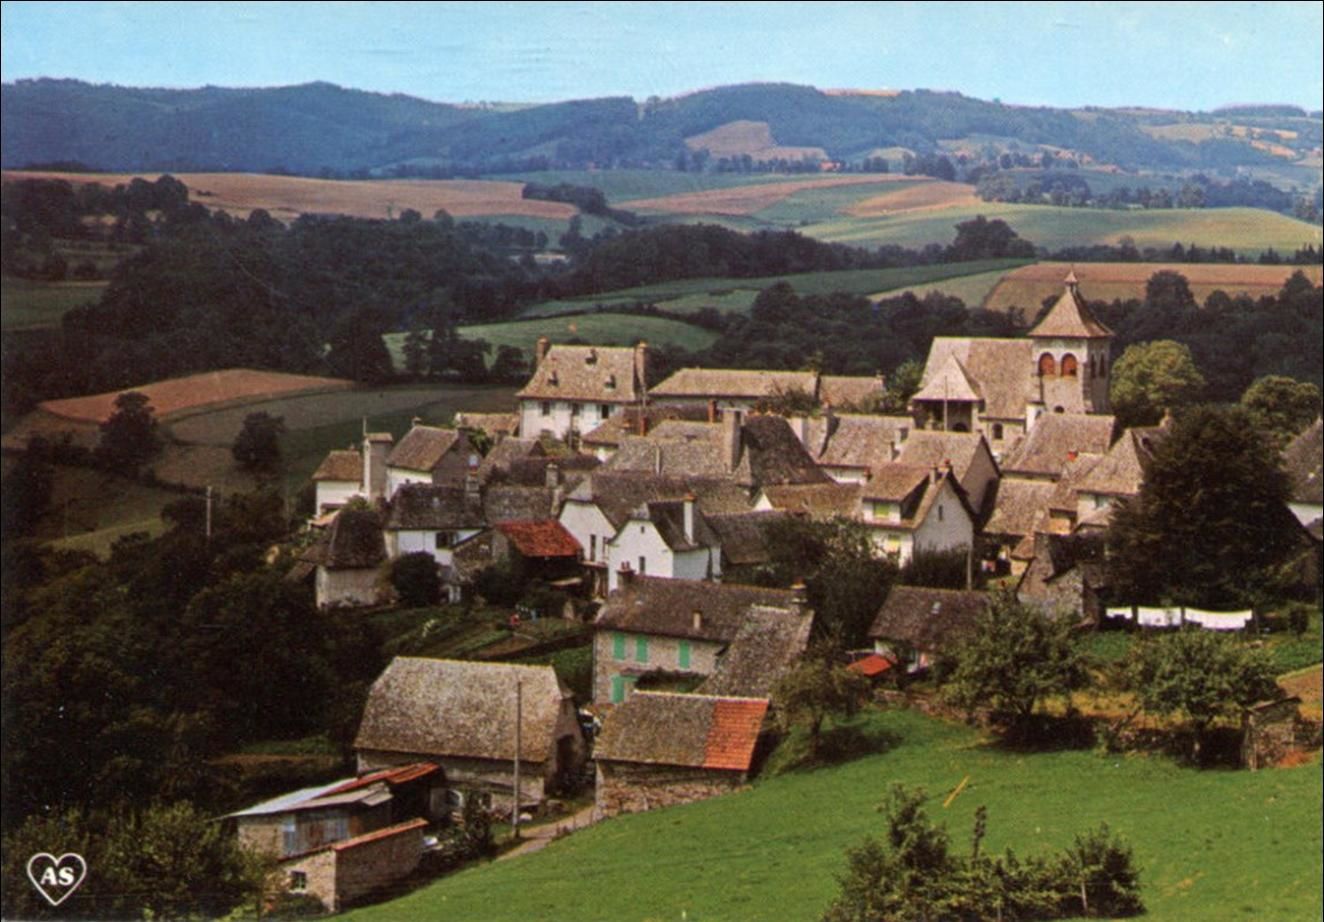 Le village de Junhac dans le Cantal